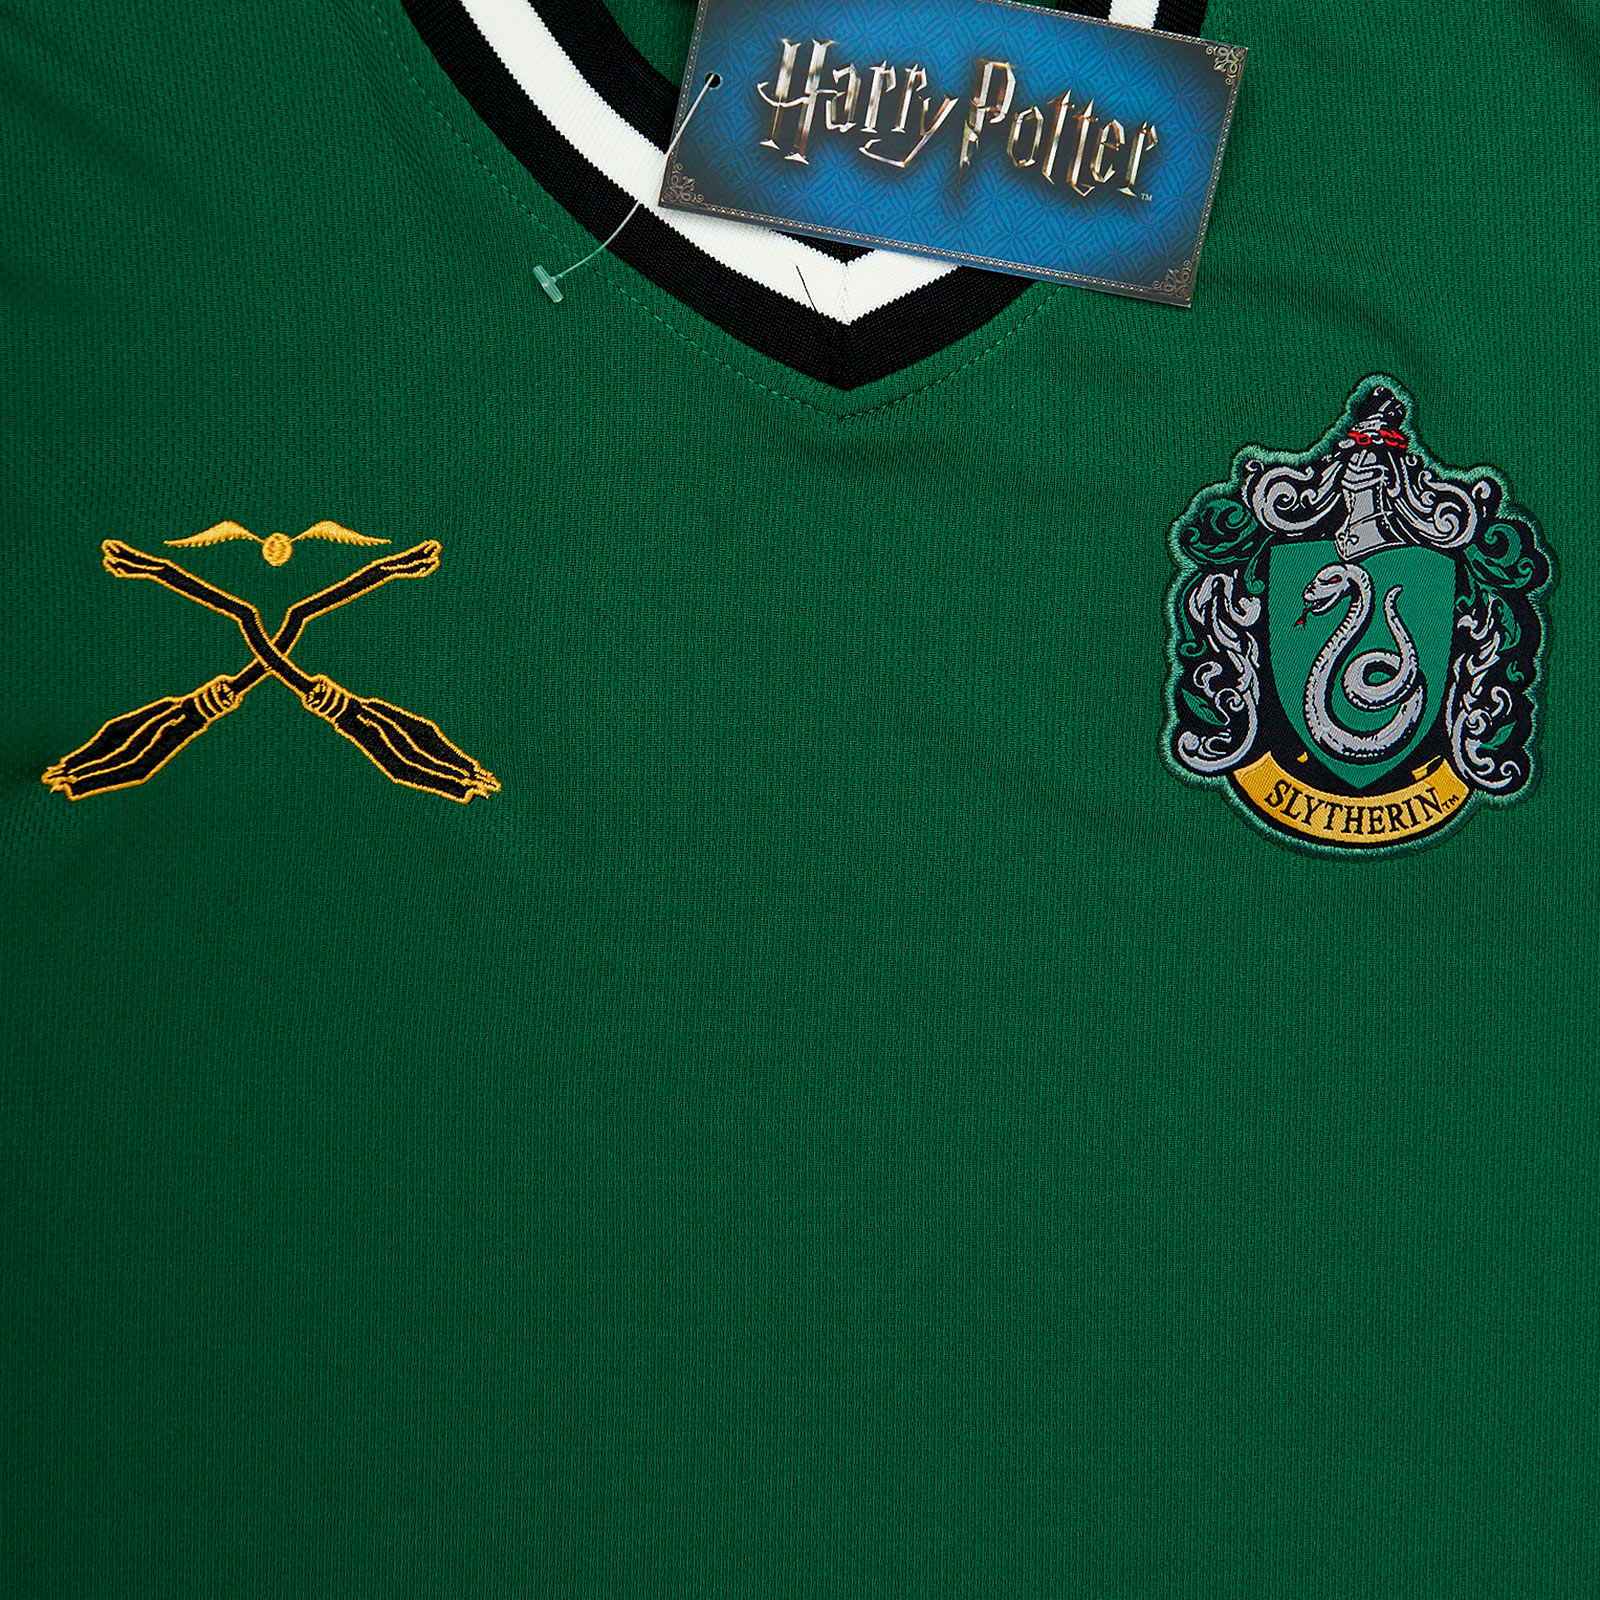 Harry Potter - T-shirt de l'équipe de Quidditch de Slytherin